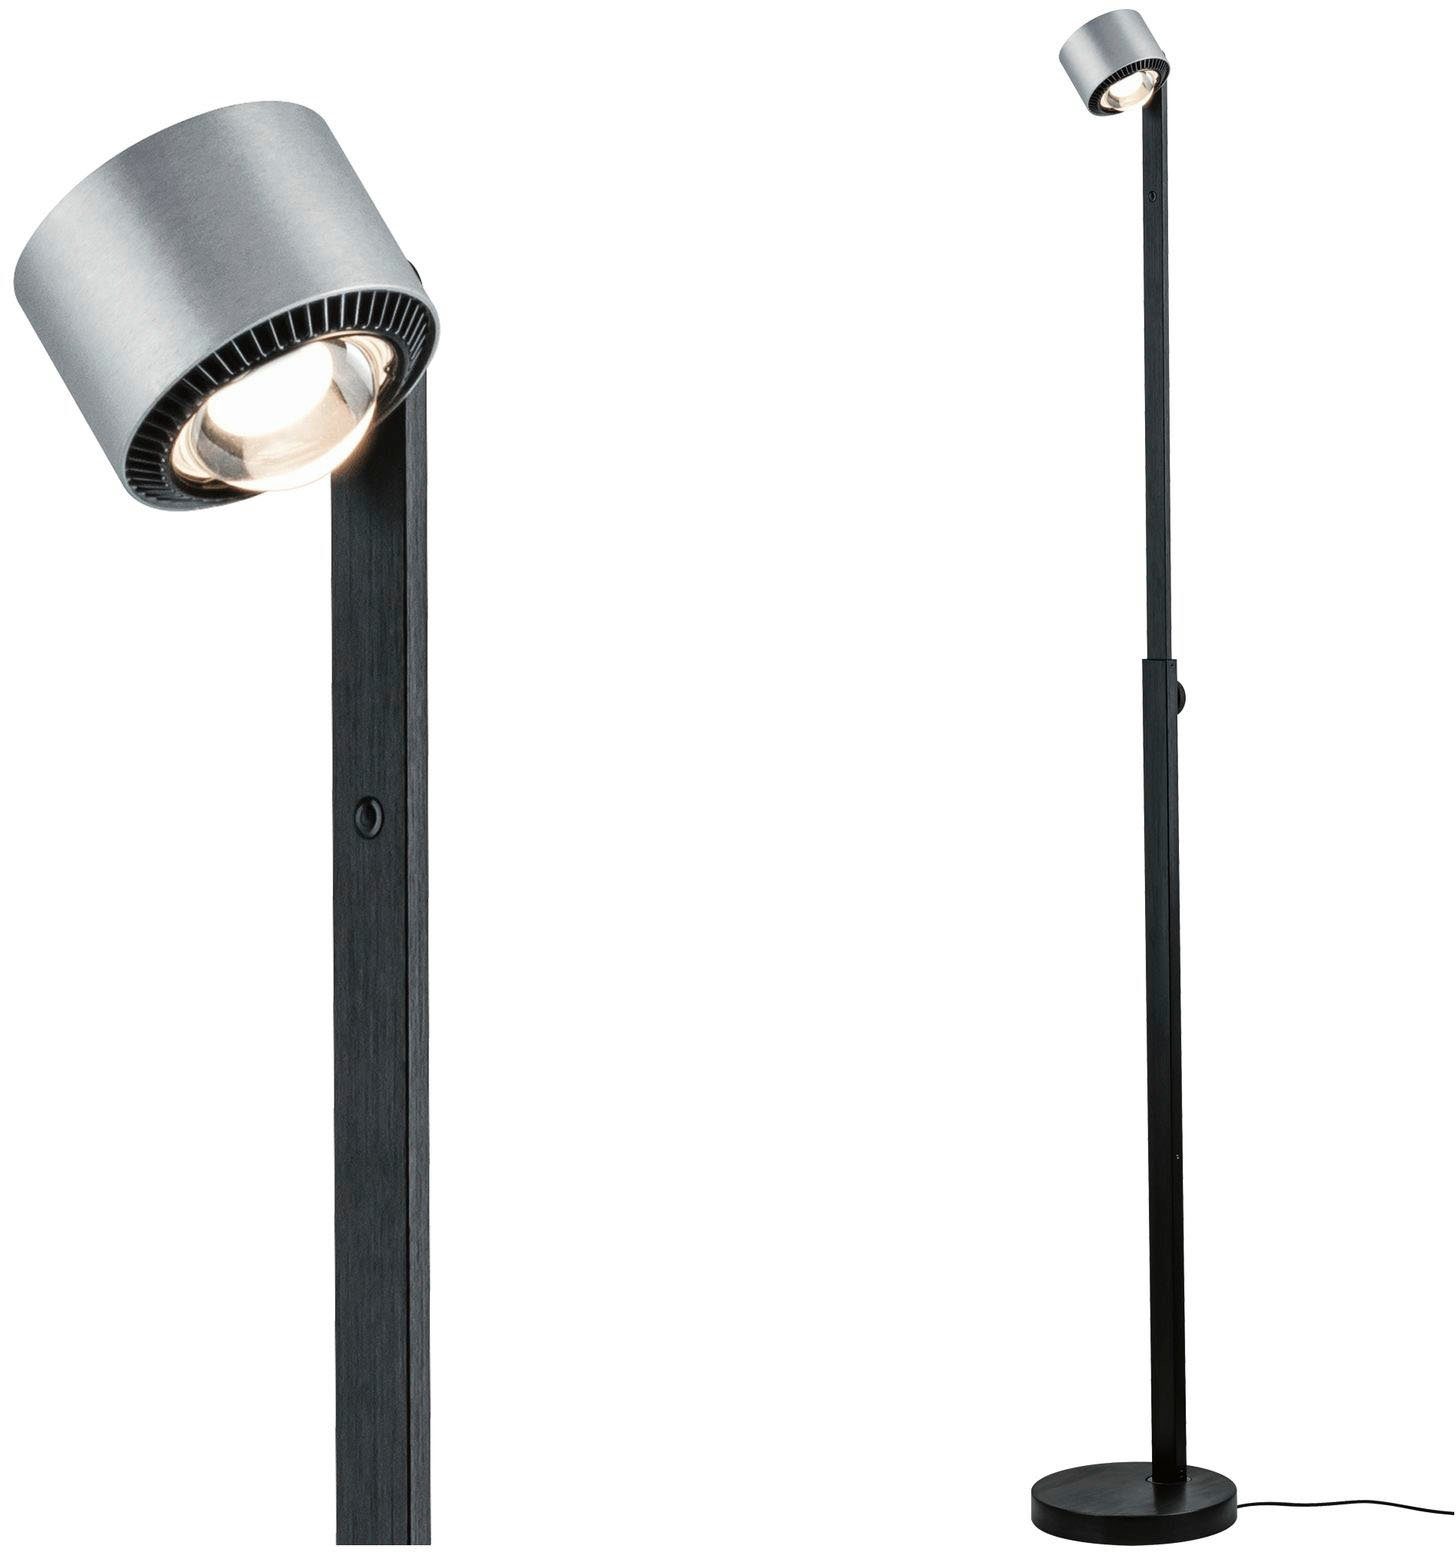 Stehlampe Wohn- Warmweiß, Beleuchtung LED integriert, Stehleuchte fest für von Paulmann oder Esszimmer Schlaf- LED Aldan,